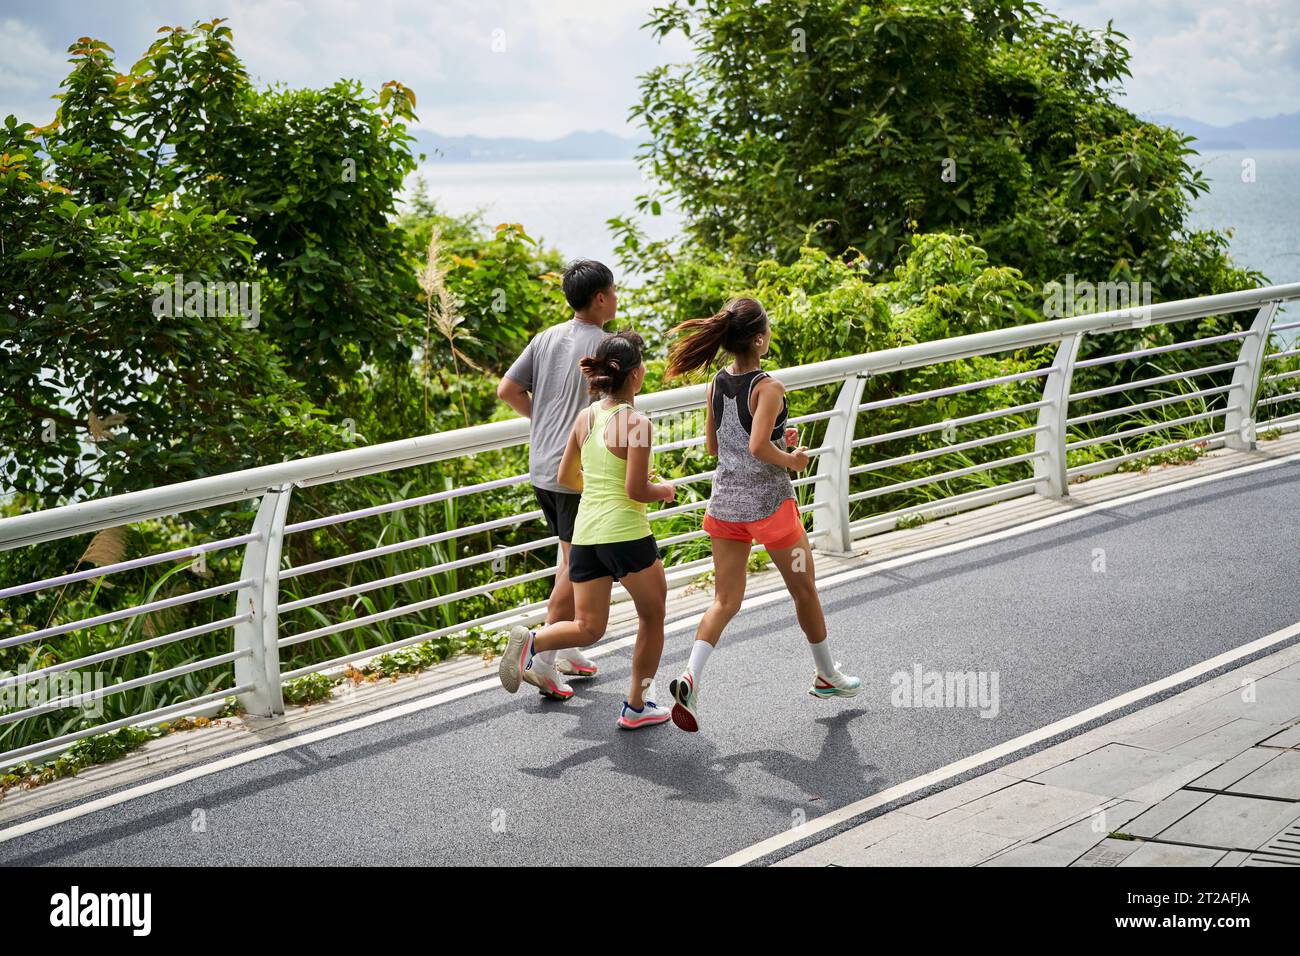 groupe de trois jeunes adultes asiatiques homme et femme courir jogging à l'extérieur dans le parc Banque D'Images